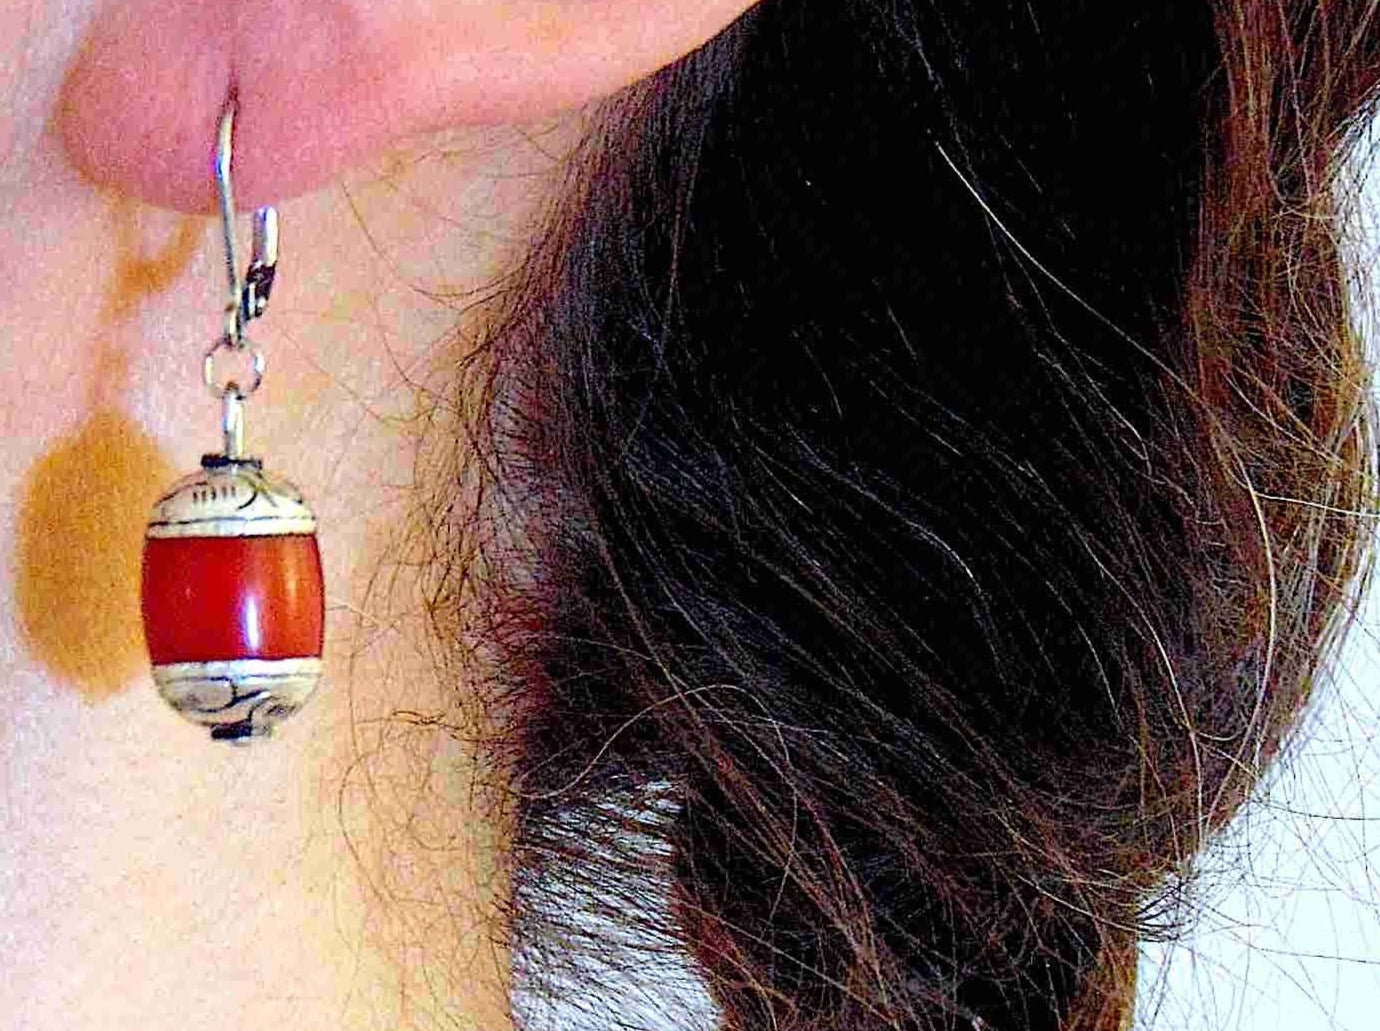 Boucles d'oreilles courtes avec cylindres tibétains de résine rouge, capuchons en étain sculptés, crochets à levier acier inoxydable